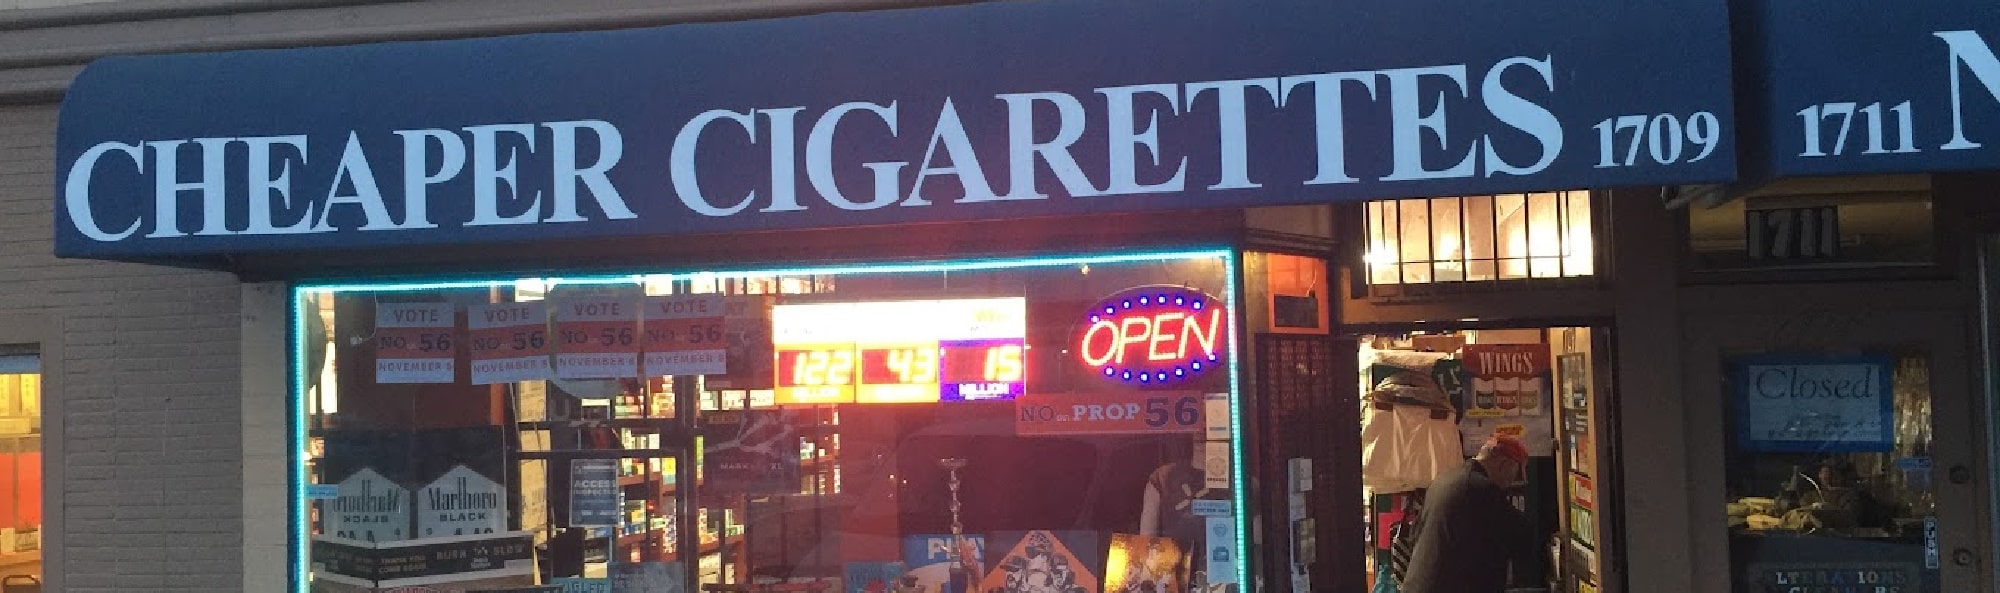 image of cheaper cigarettes in san francisco ca